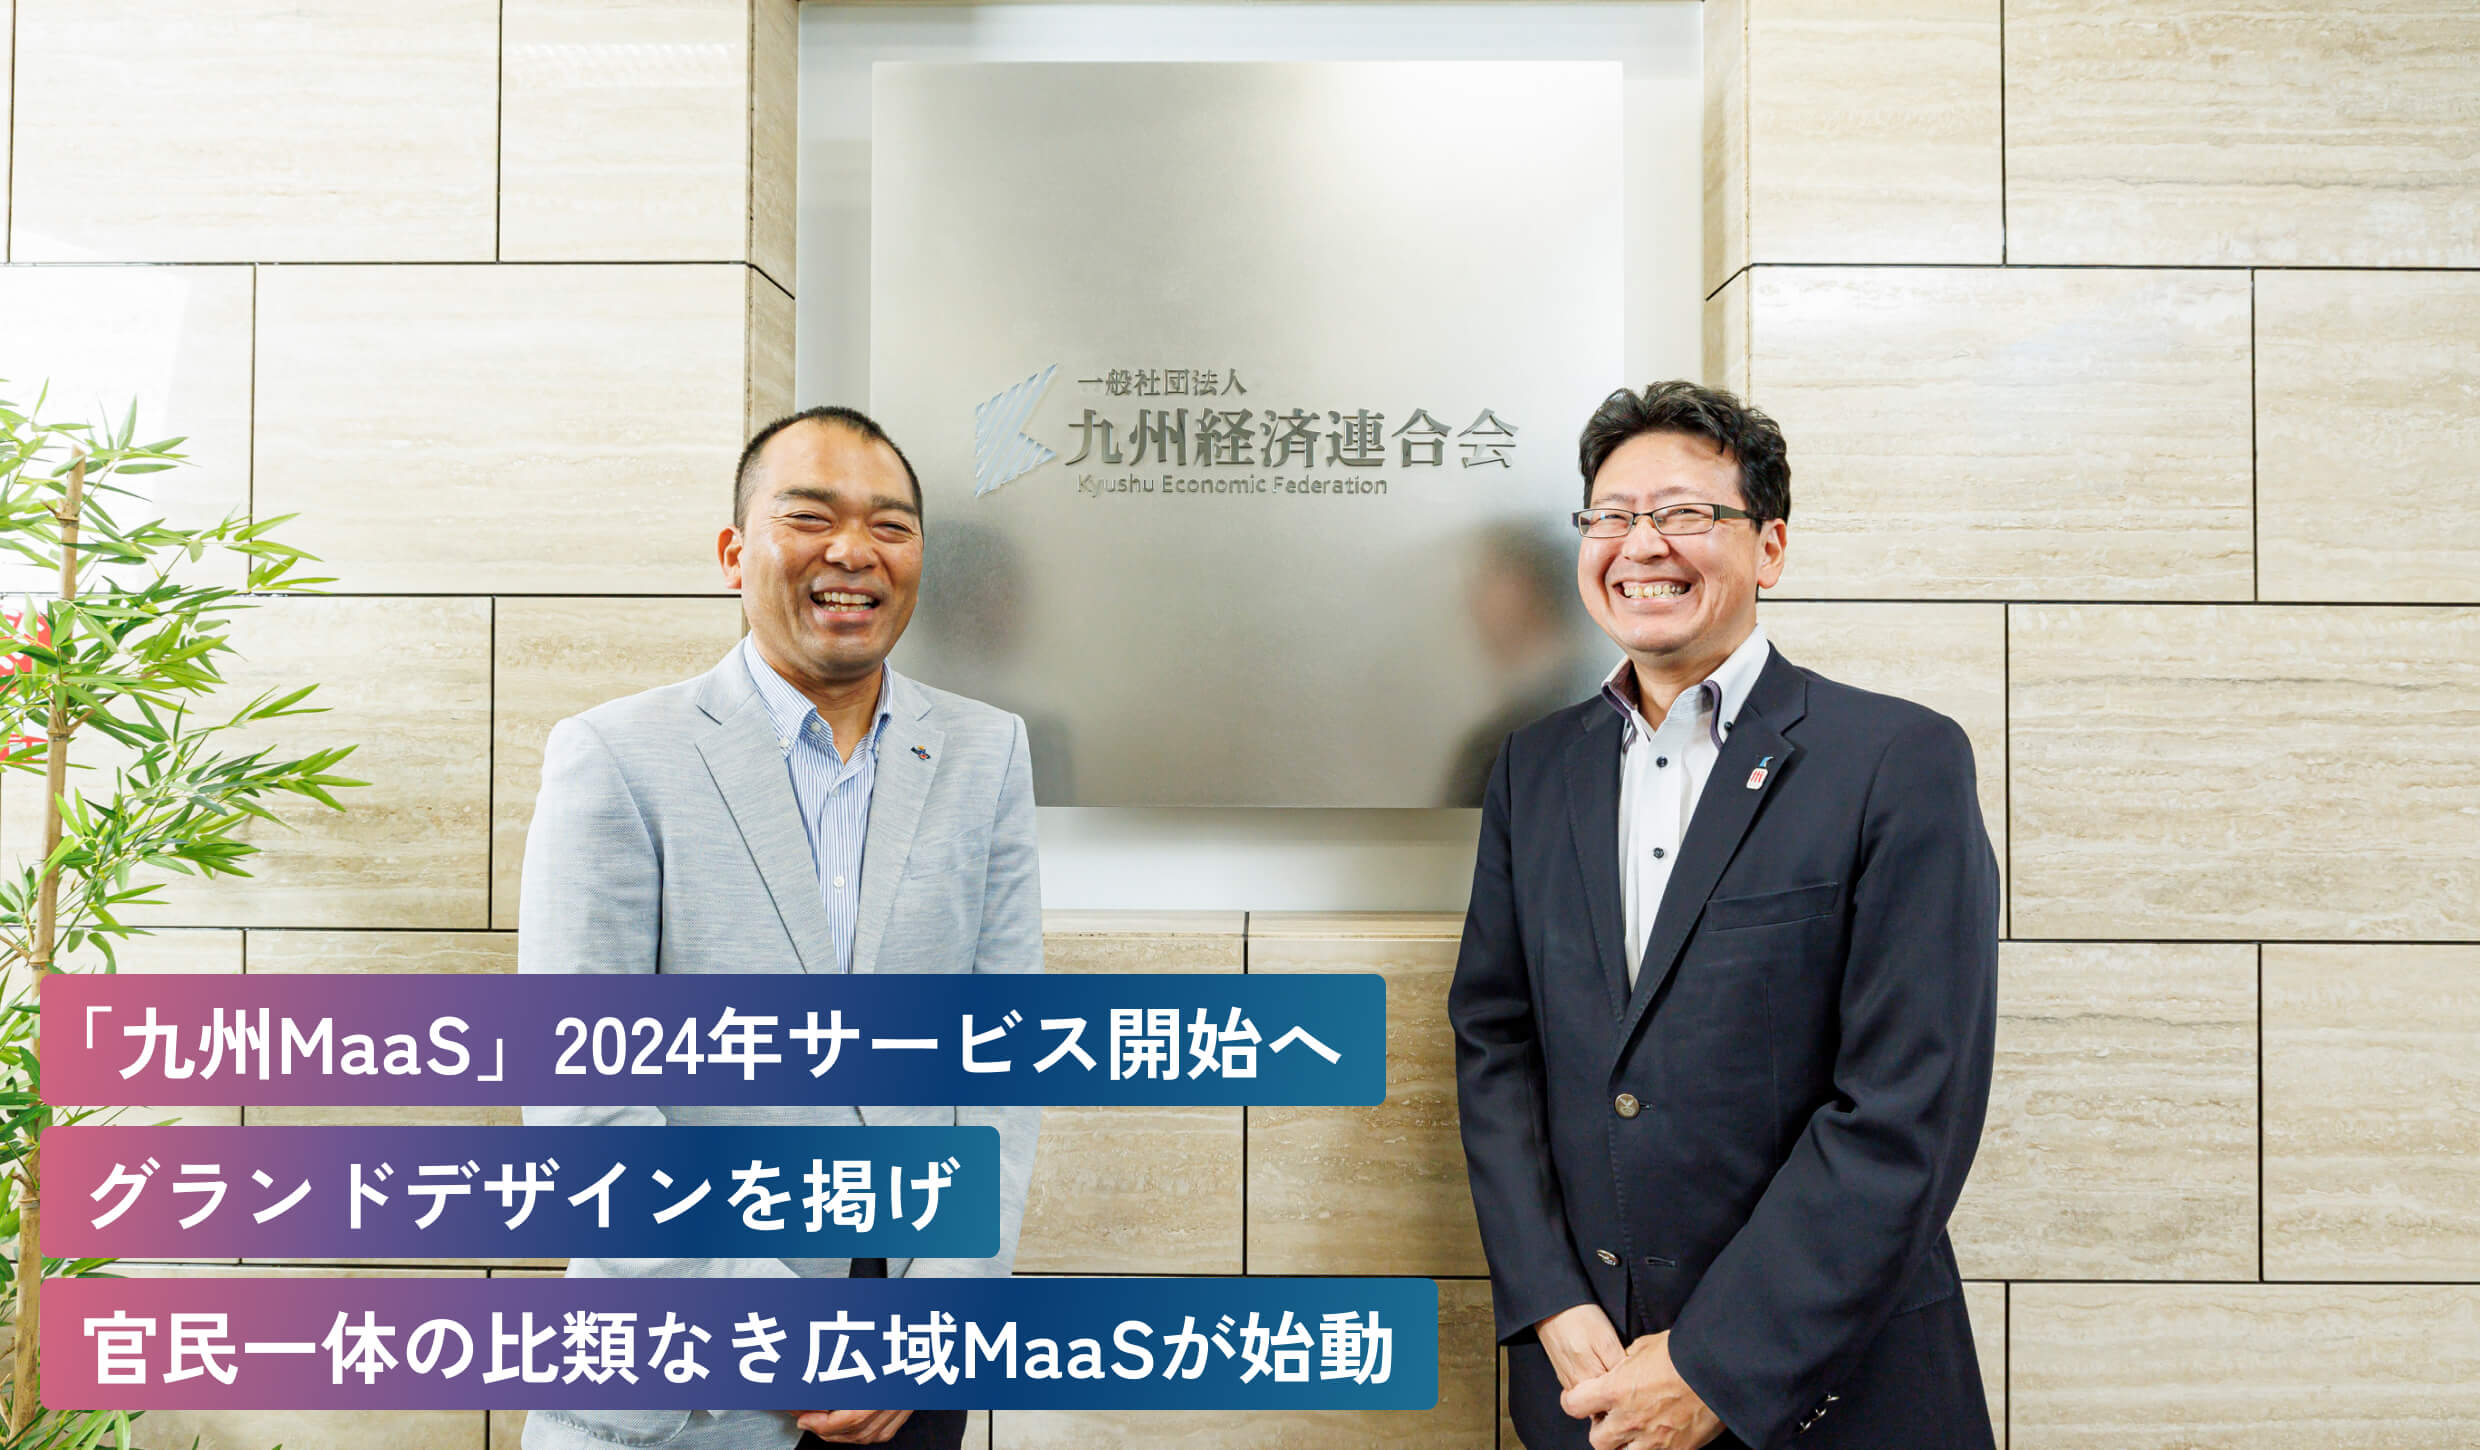 「九州MaaS」2024年サービス開始へグランドデザインを掲げ官民一体の比類なき広域MaaSが始動